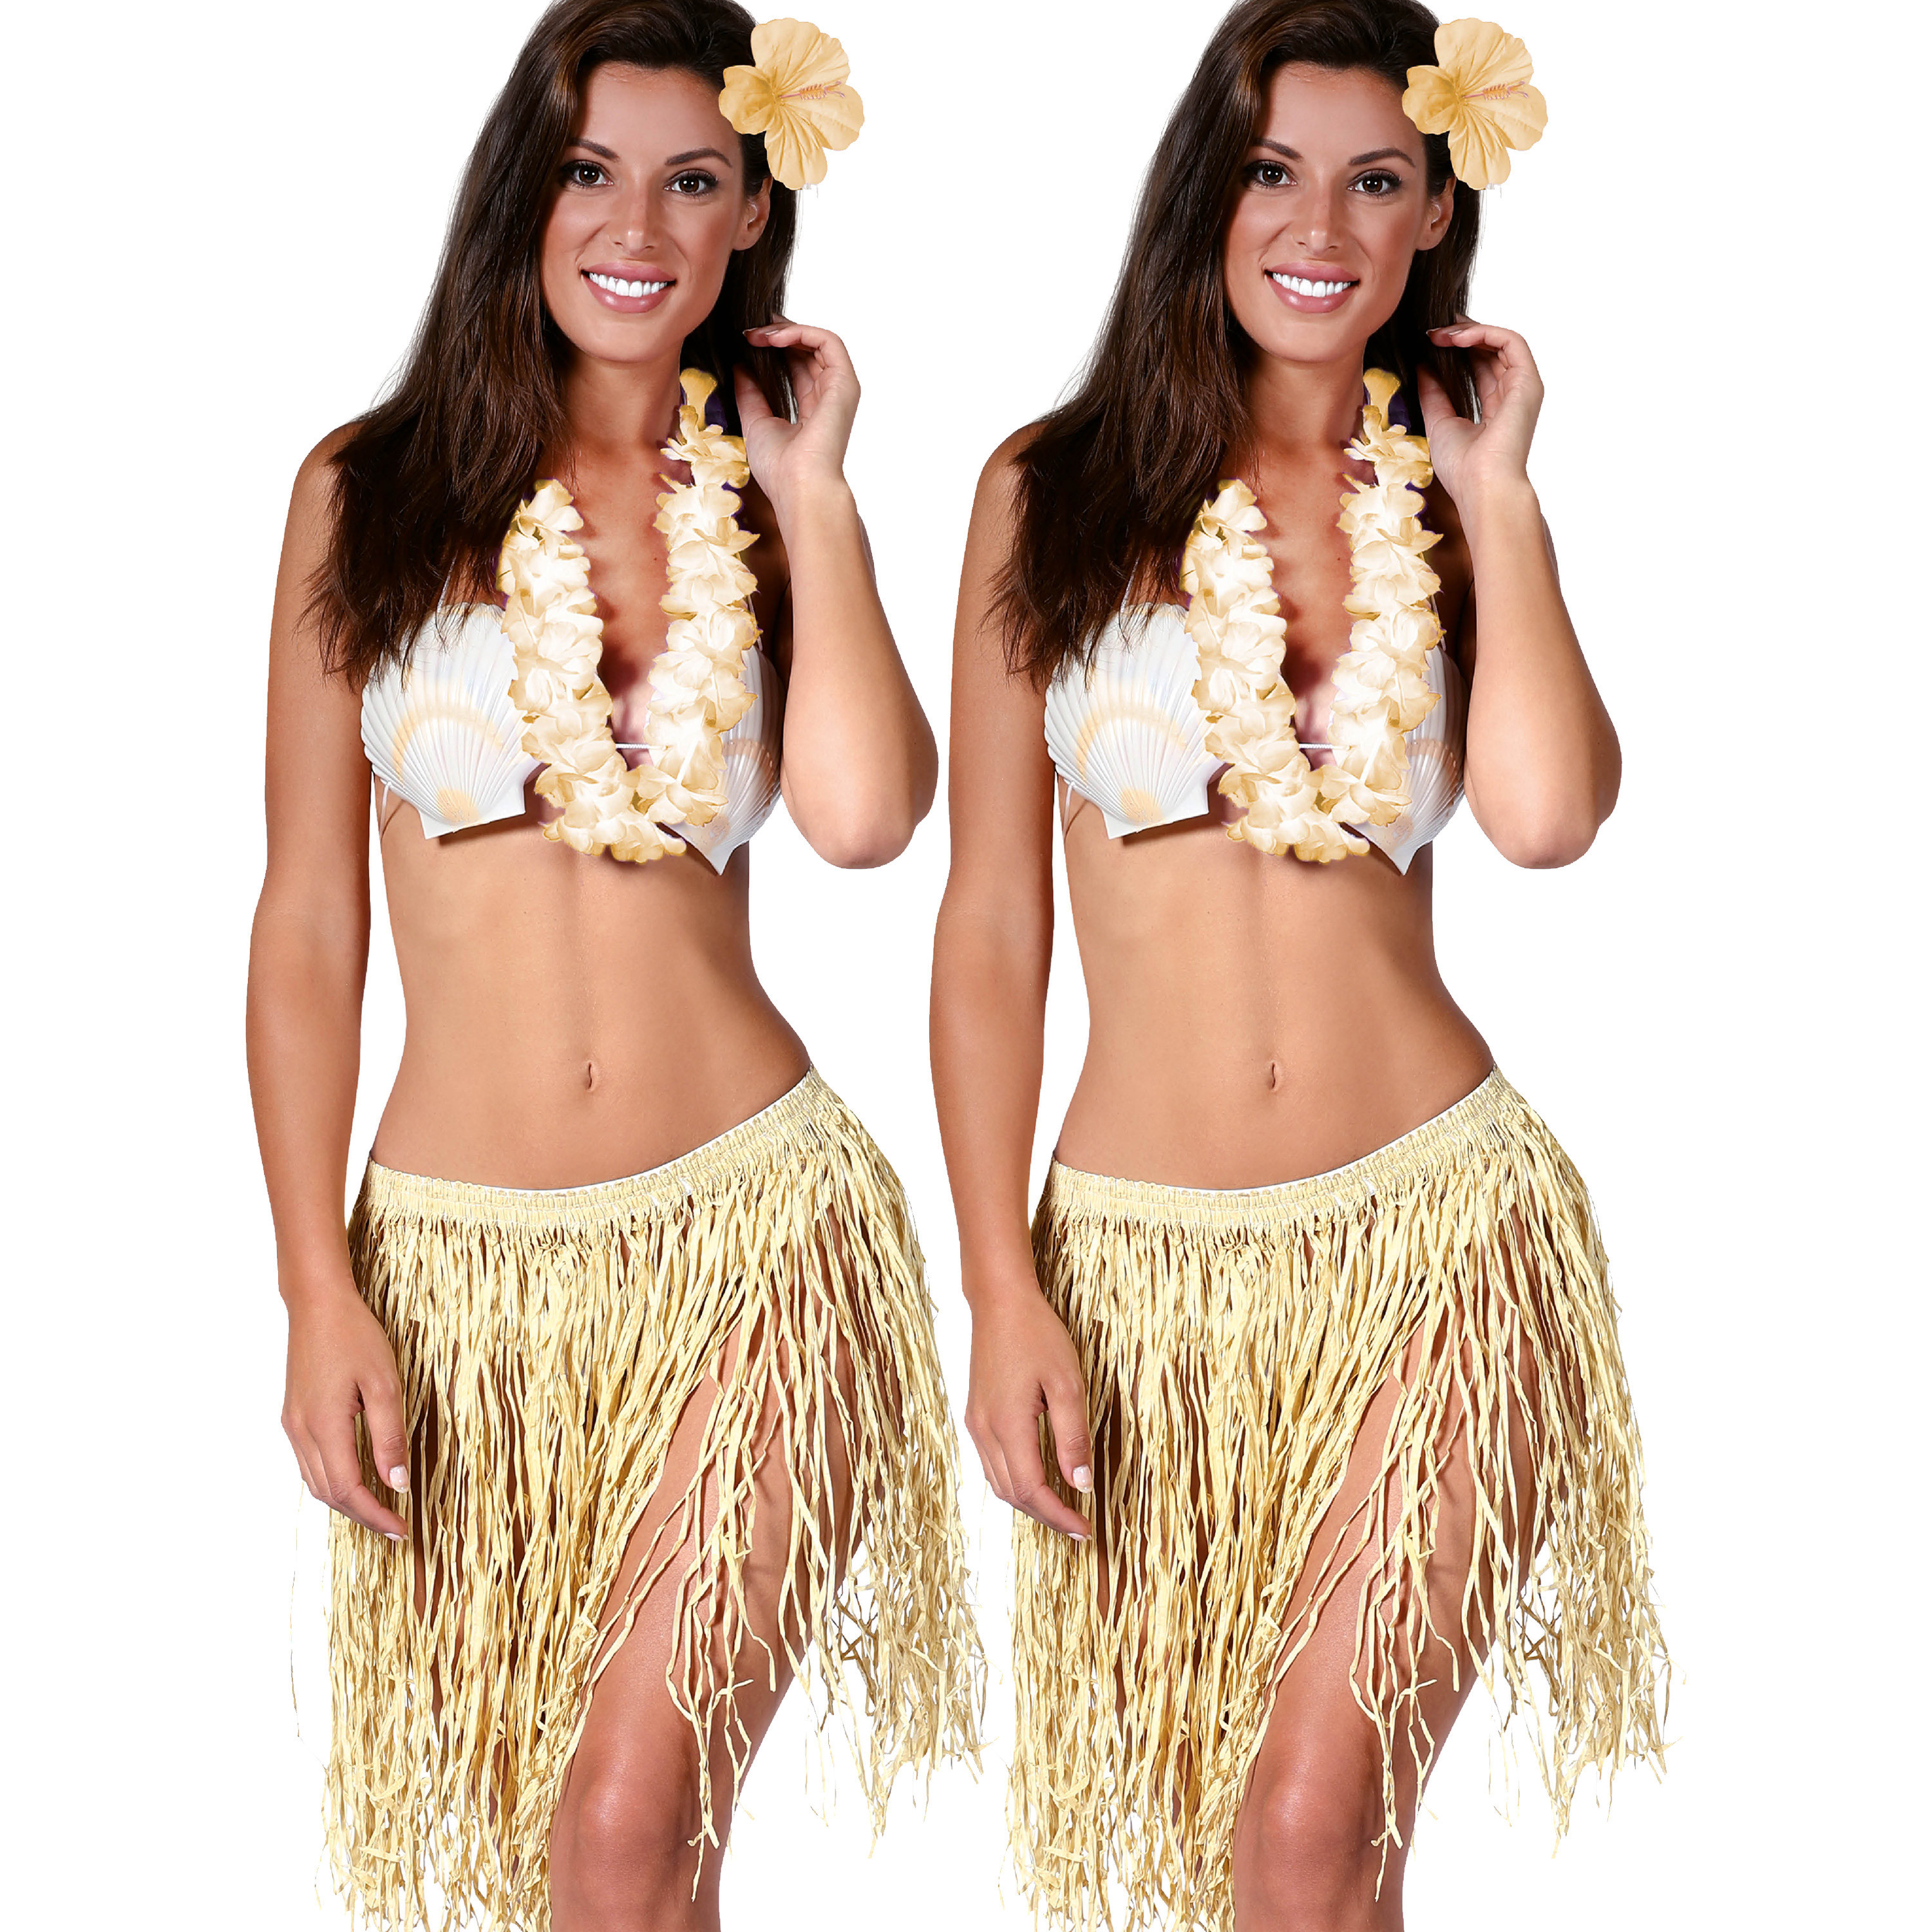 Hawaii verkleed set - 2x - voor volwassenen - naturel - rieten rokje/bloemenkrans/haarclip bloem